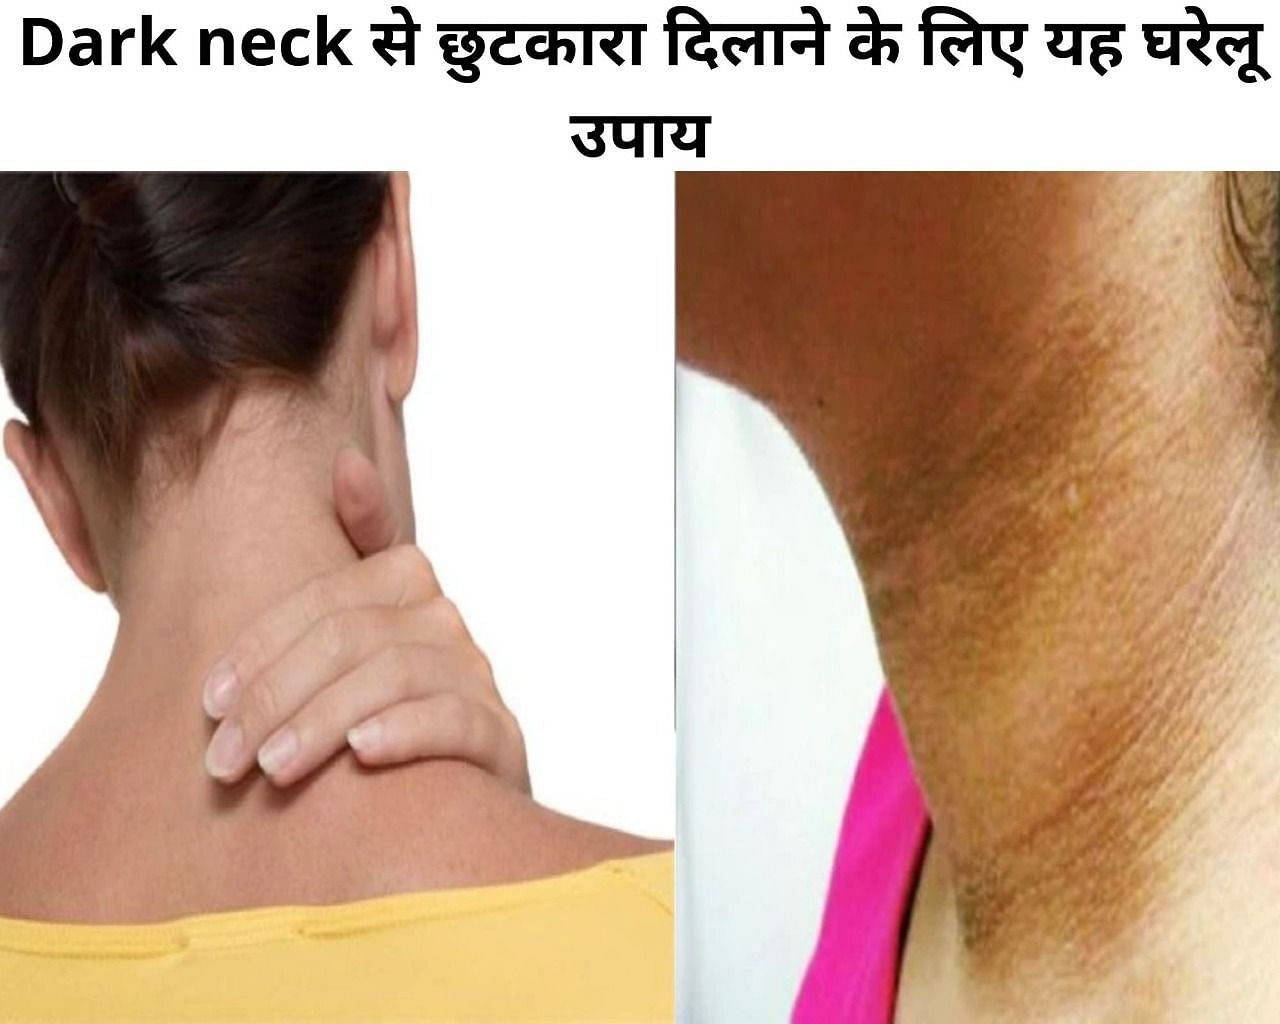 Dark neck से छुटकारा दिलाने के लिए यह घरेलू उपाय (फोटो - sportskeeda hindi)